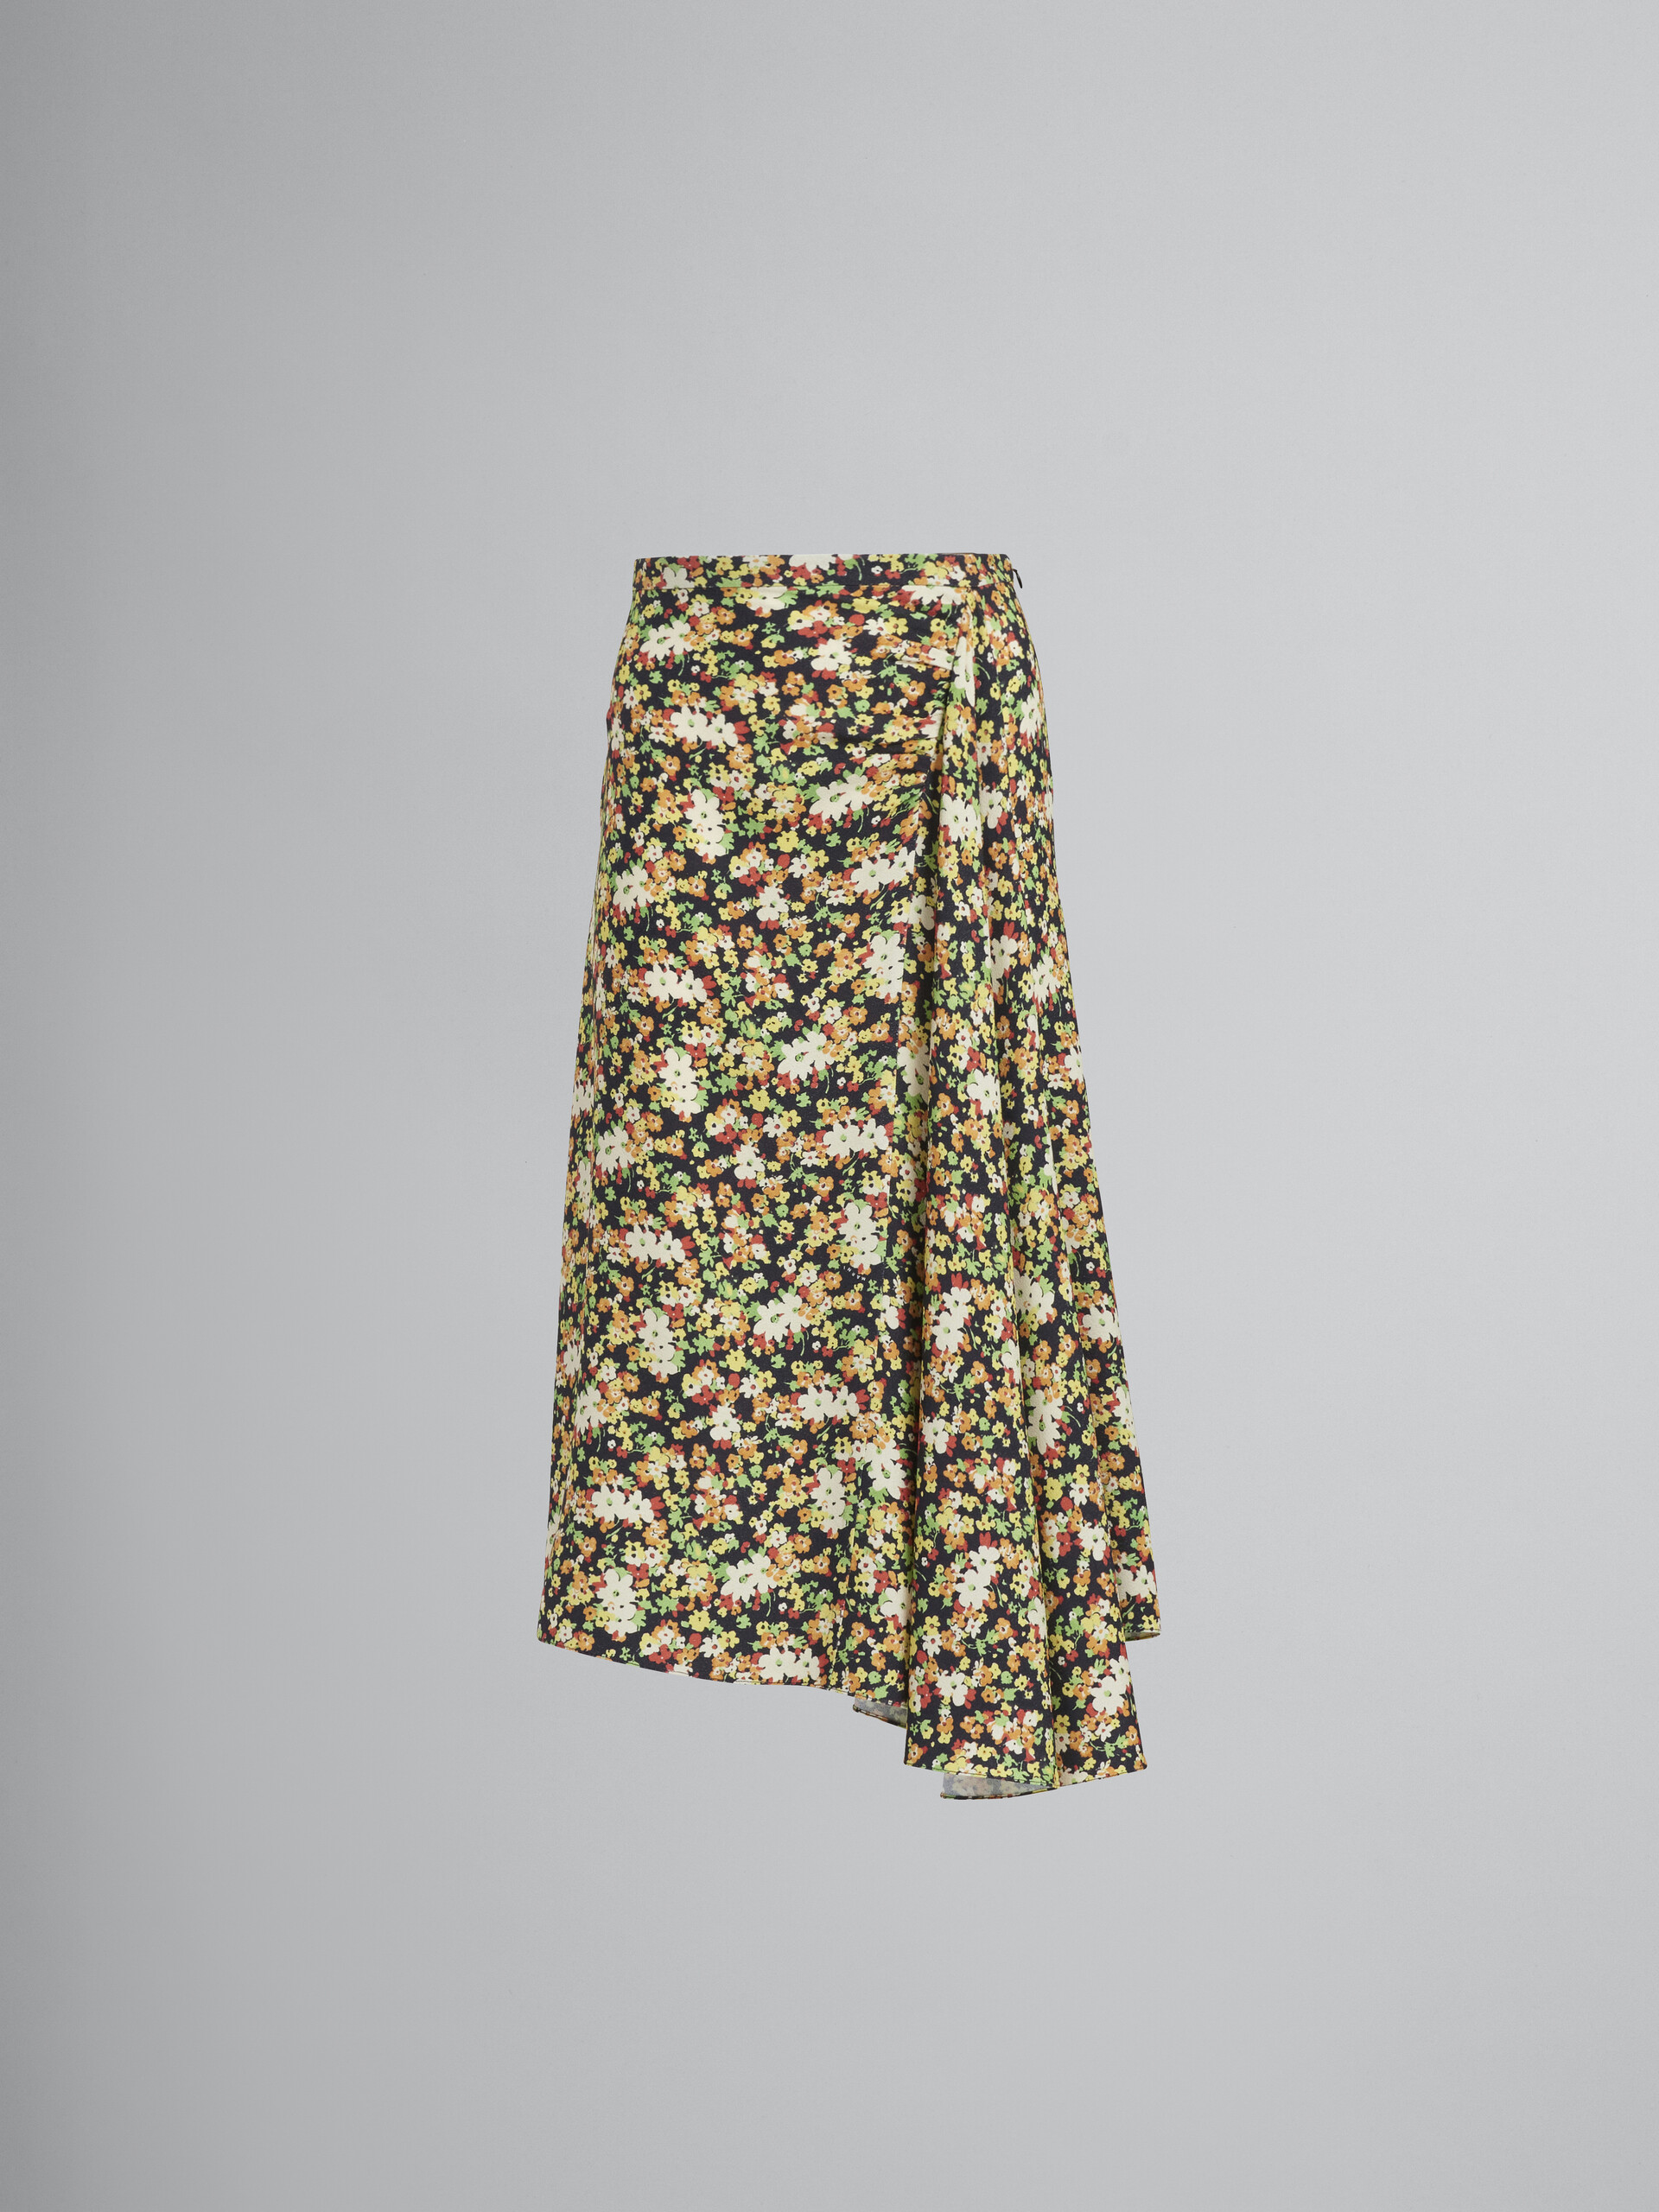 Lovers Prairie print skirt with godet hem - Skirts - Image 1